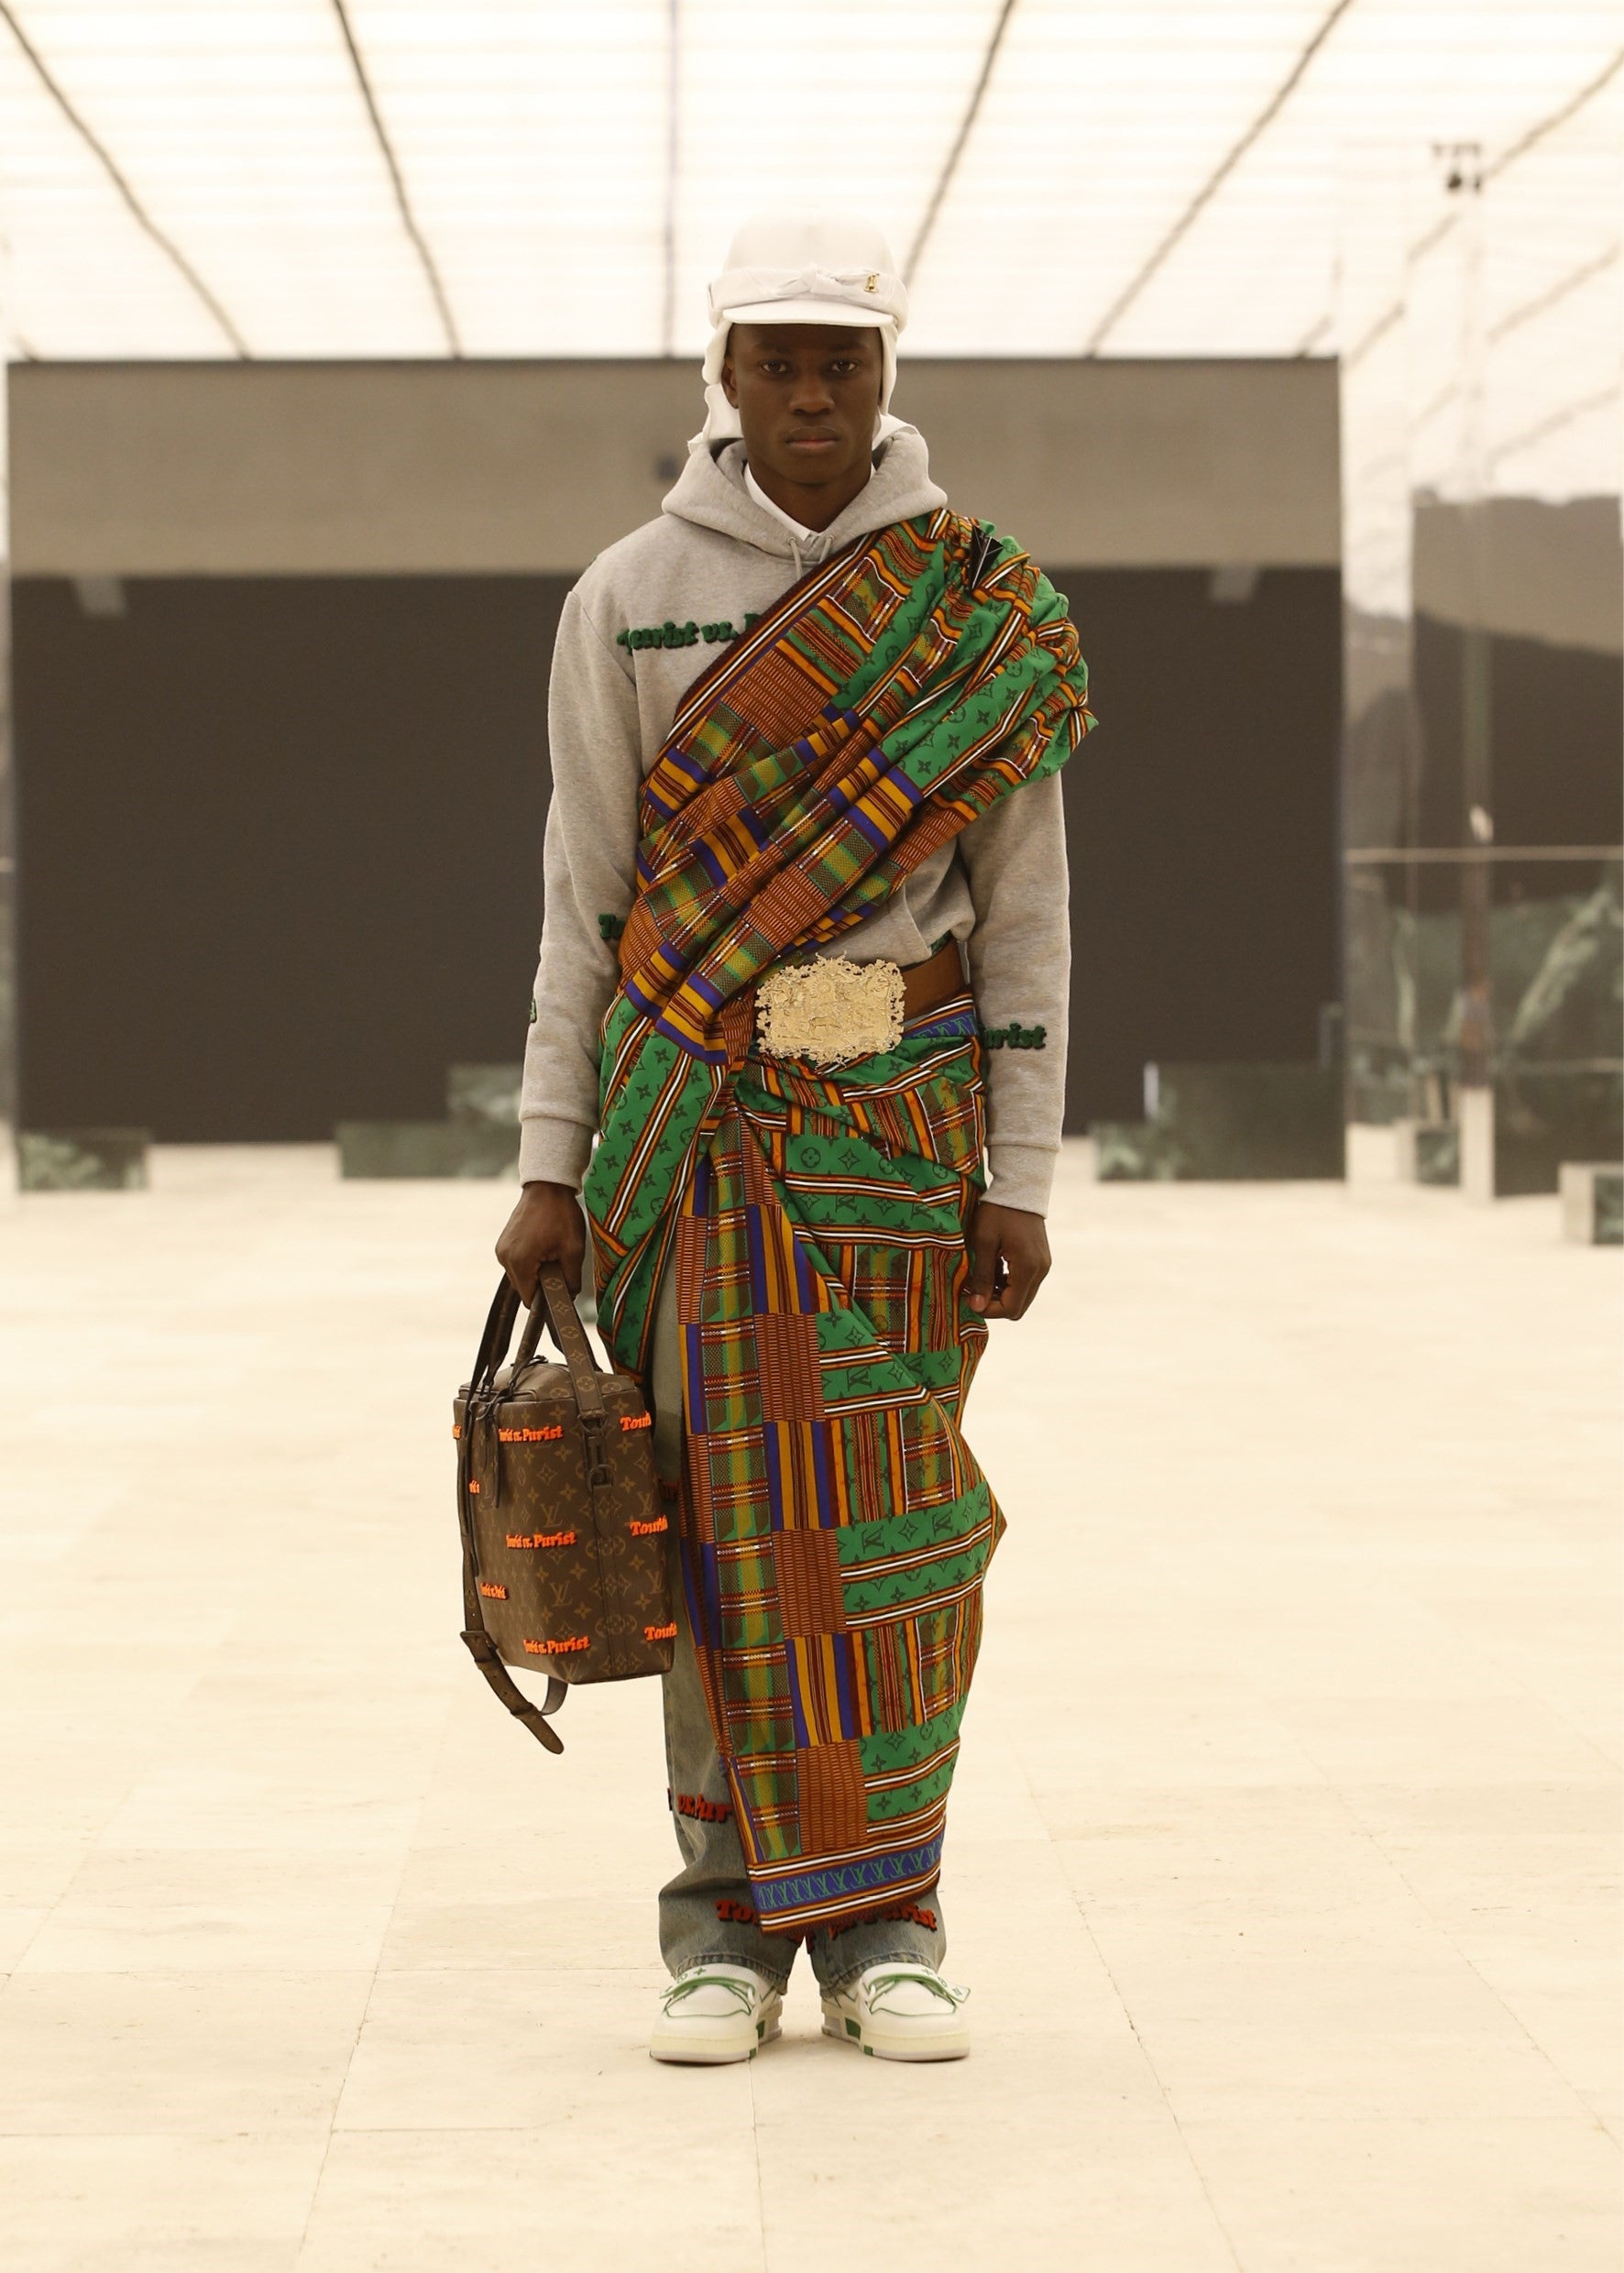 Louis Vuitton: Culture